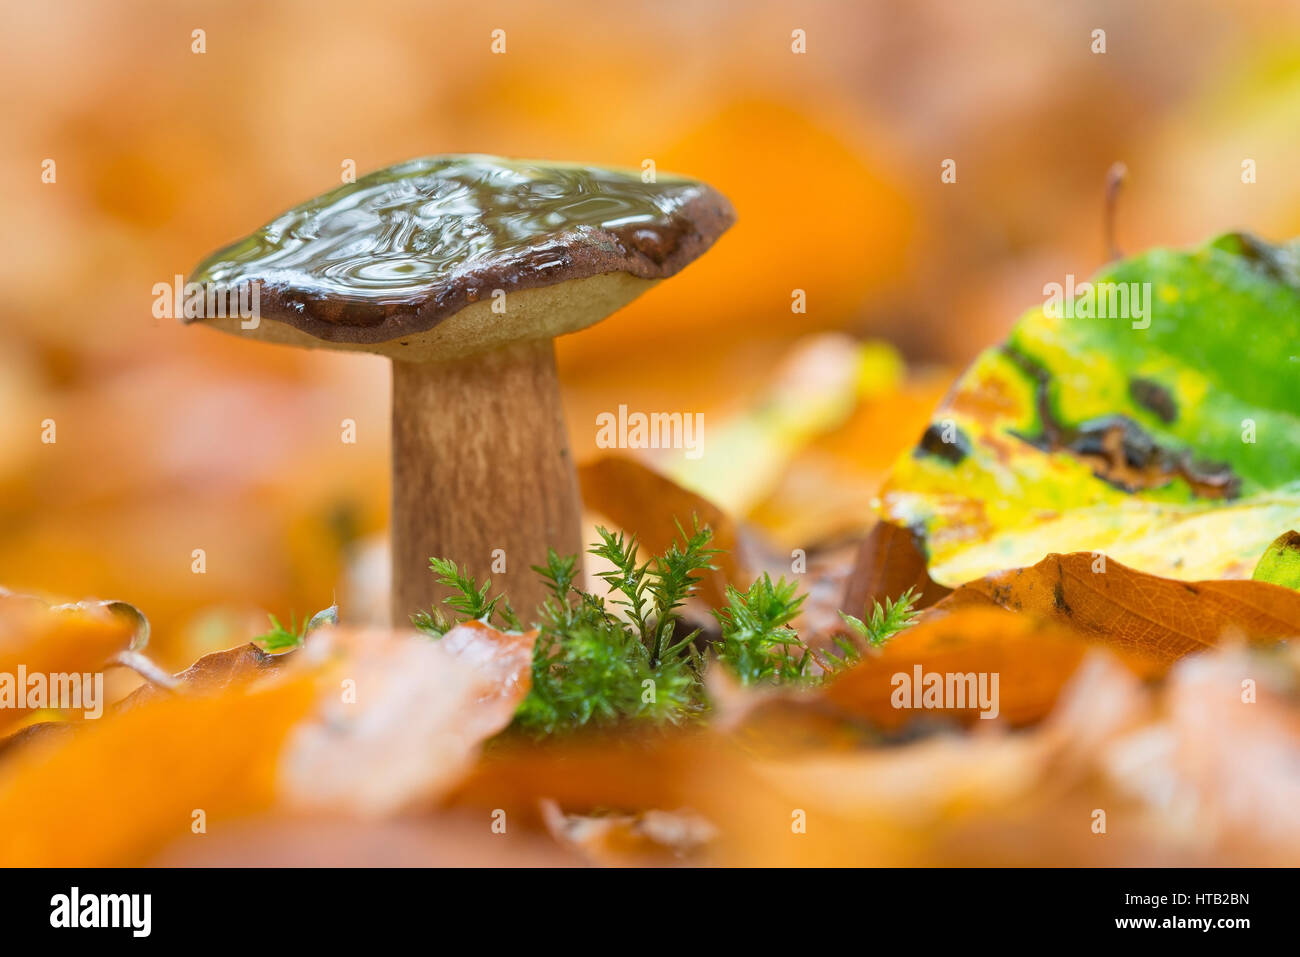 CEP, Essen Pilze, Pilze, Cep, ein Lebensmittel-Pilz im Herstlichen Holz,  Maronen-Roehrling, Speisepilz, Pilze, Maronen-Röhrling, Ein Speisepilz ich  Stockfotografie - Alamy